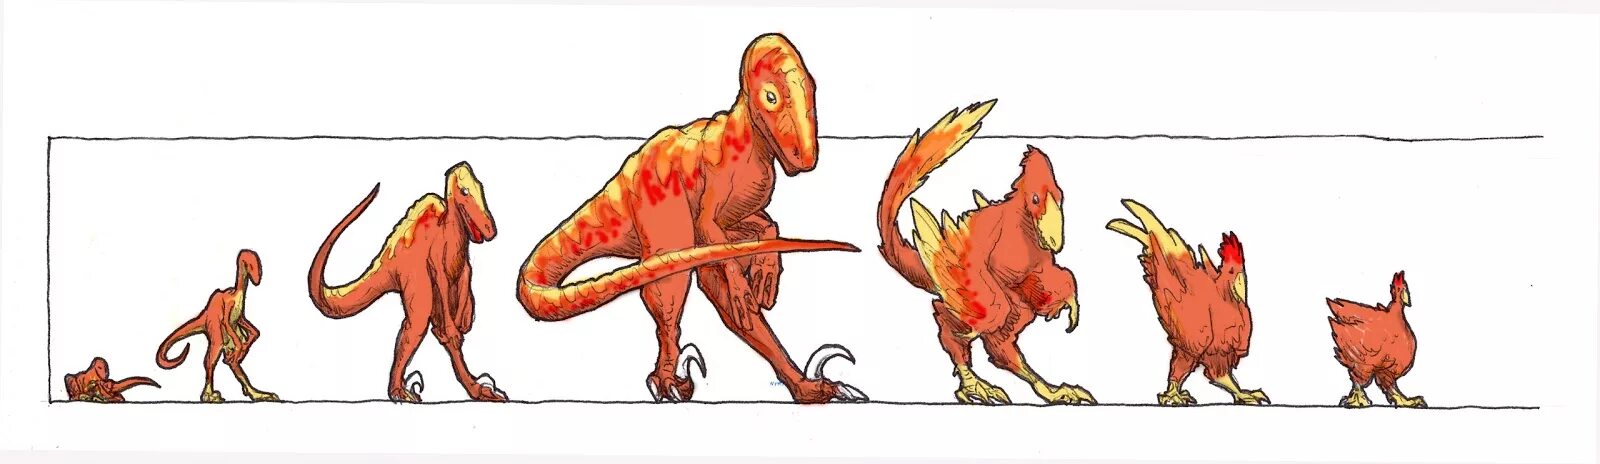 Динозавры развитие. Тиранозавр курица Эволюция. Курица потомок динозавров. Тираннозавр предок курицы. Джек Хорнер Курозавр.